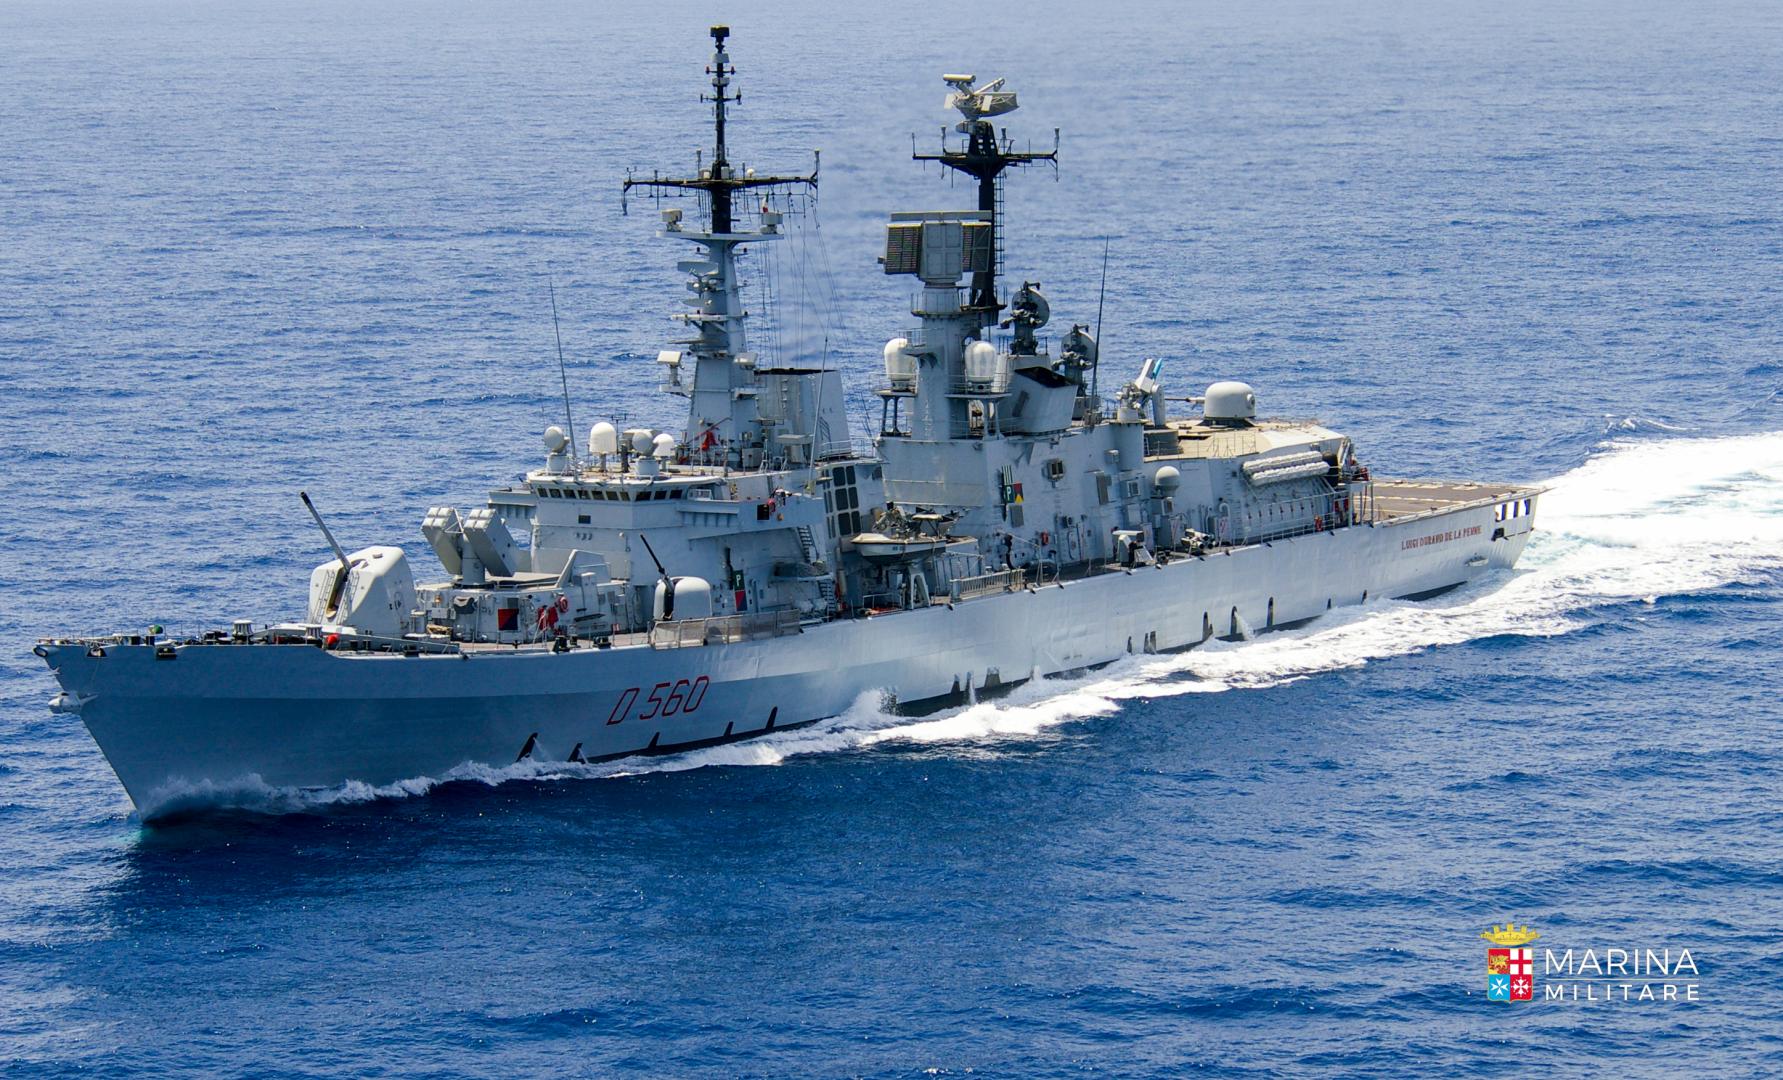 Marina Militare: Nave Durand de la Penne nel bacino del Mar Nero